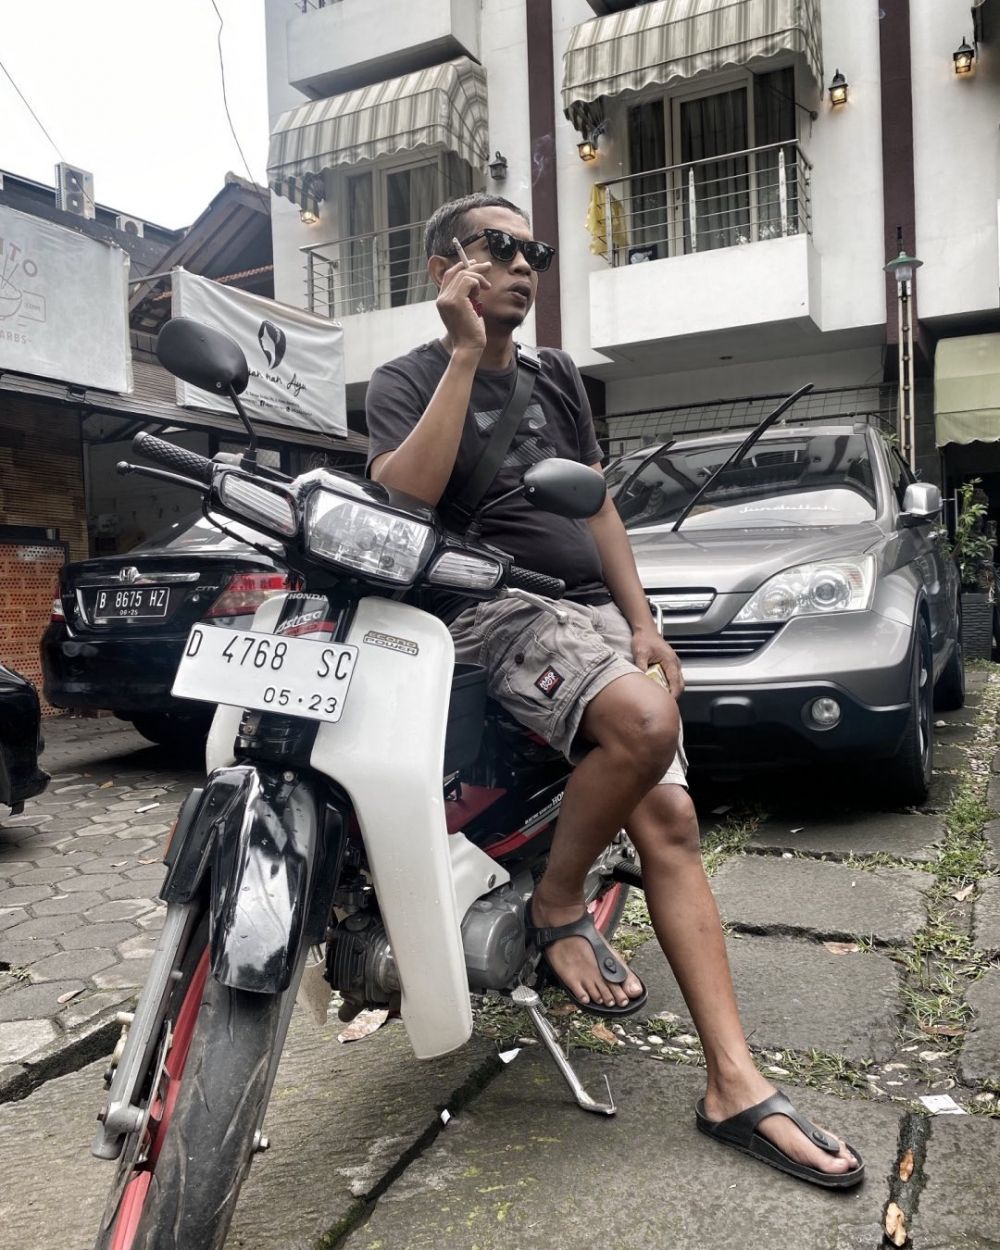 Supir Kang Bahar di Preman Pensiun hobi touring motor, intip 11 potretnya saat riding